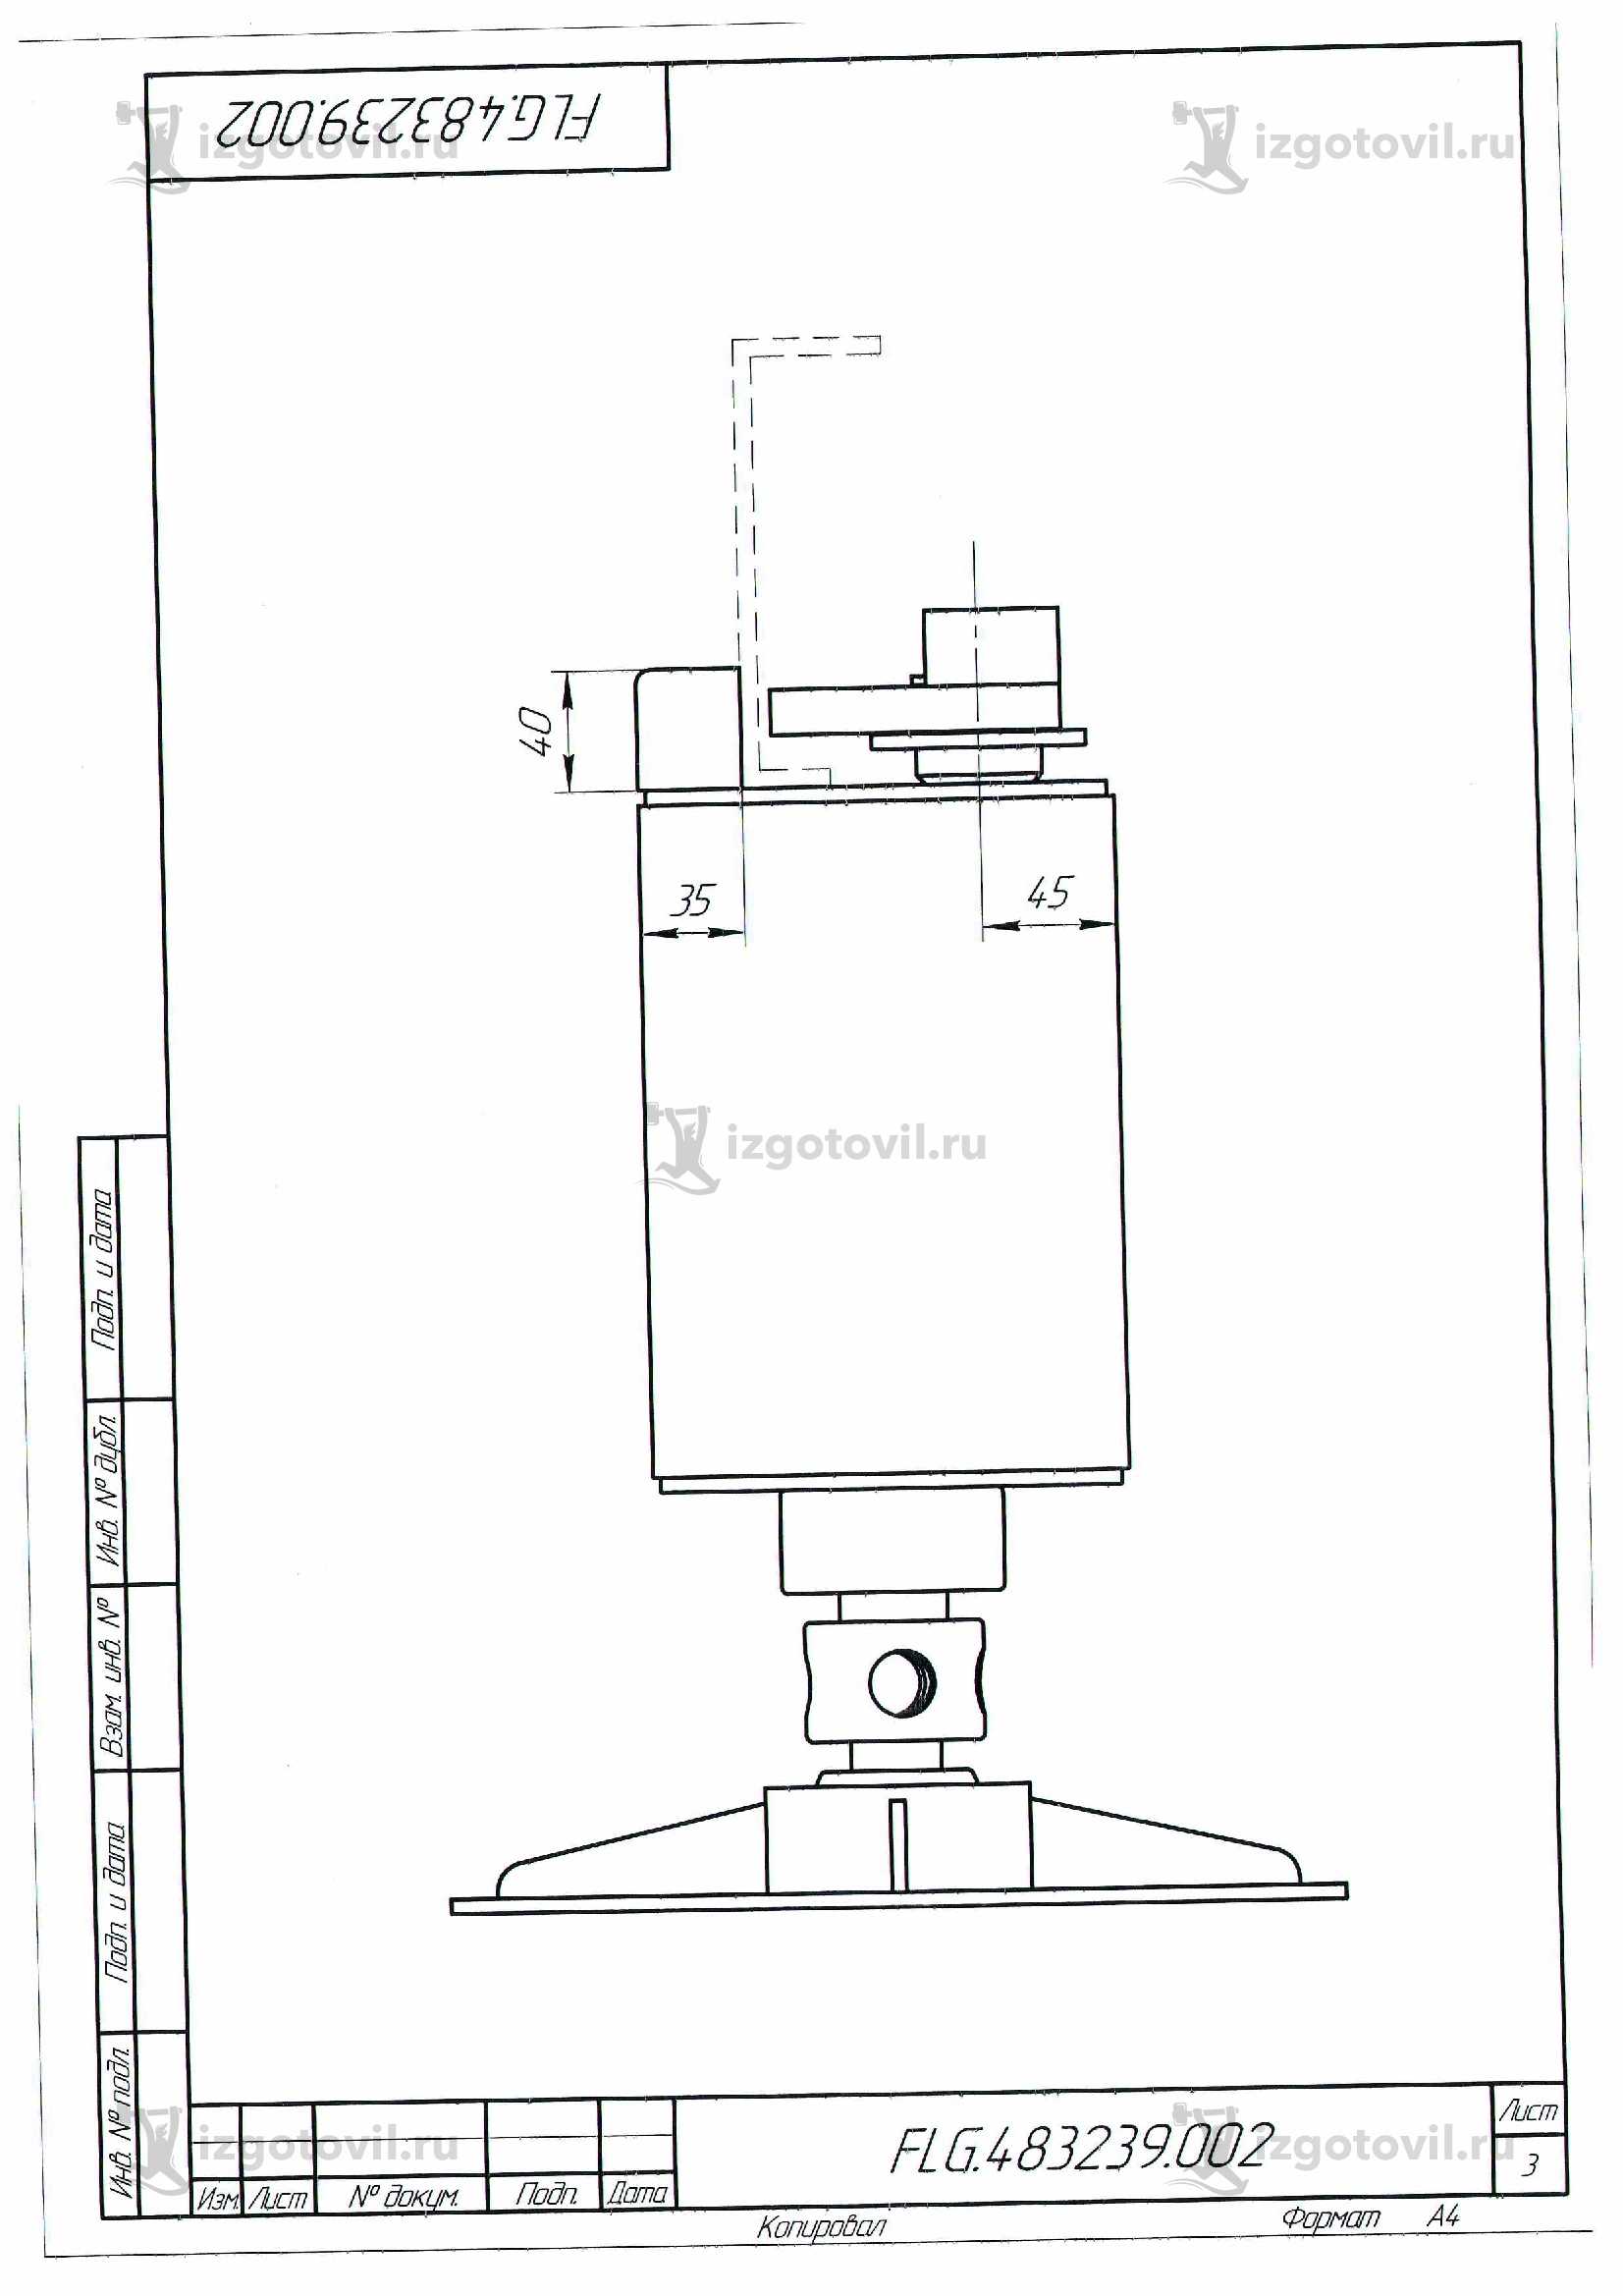 Изготовление деталей оборудования (детали фланца топливного бака).